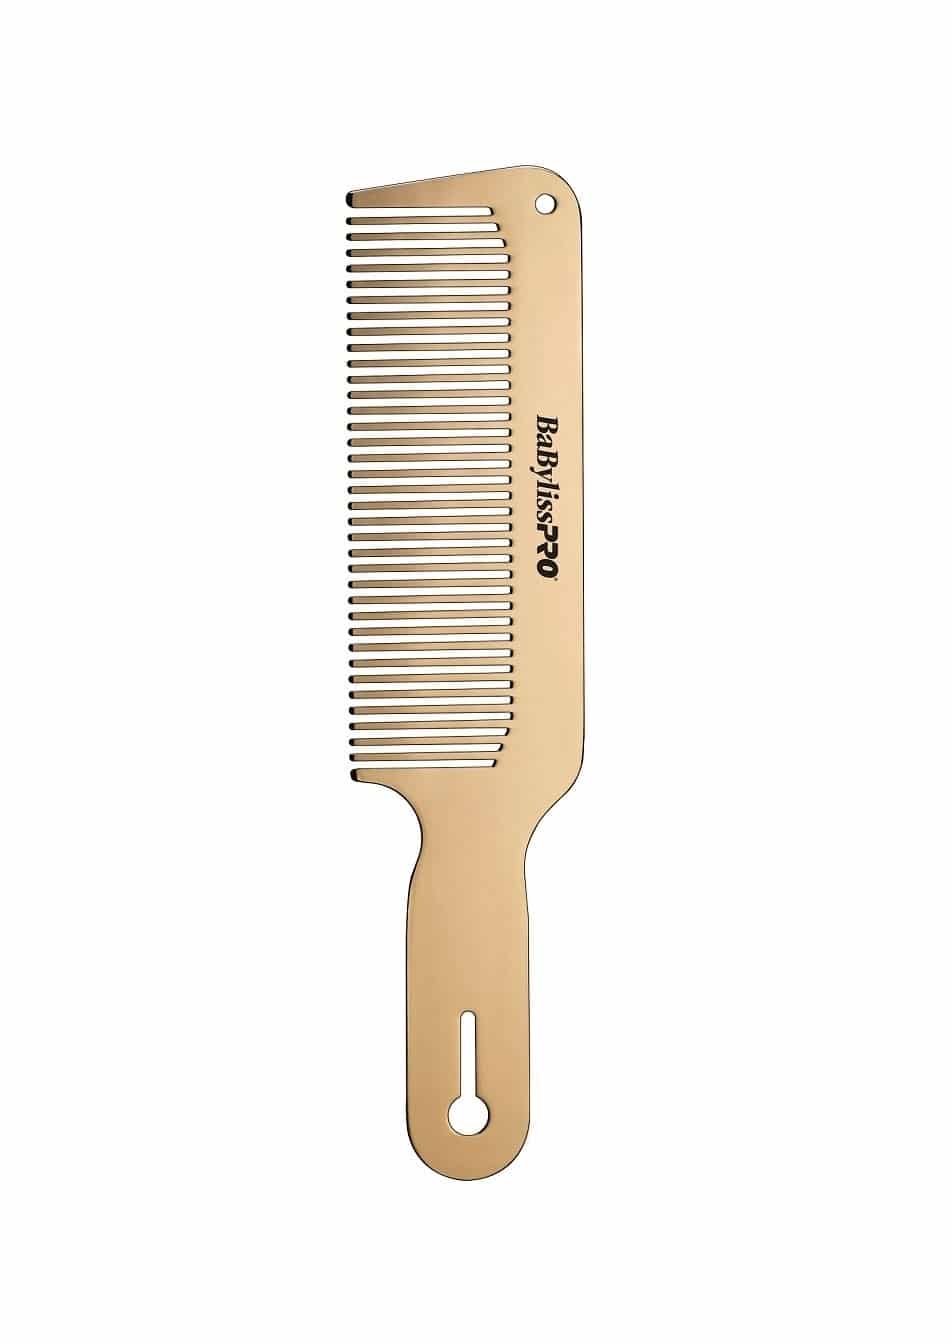 barber clipper comb